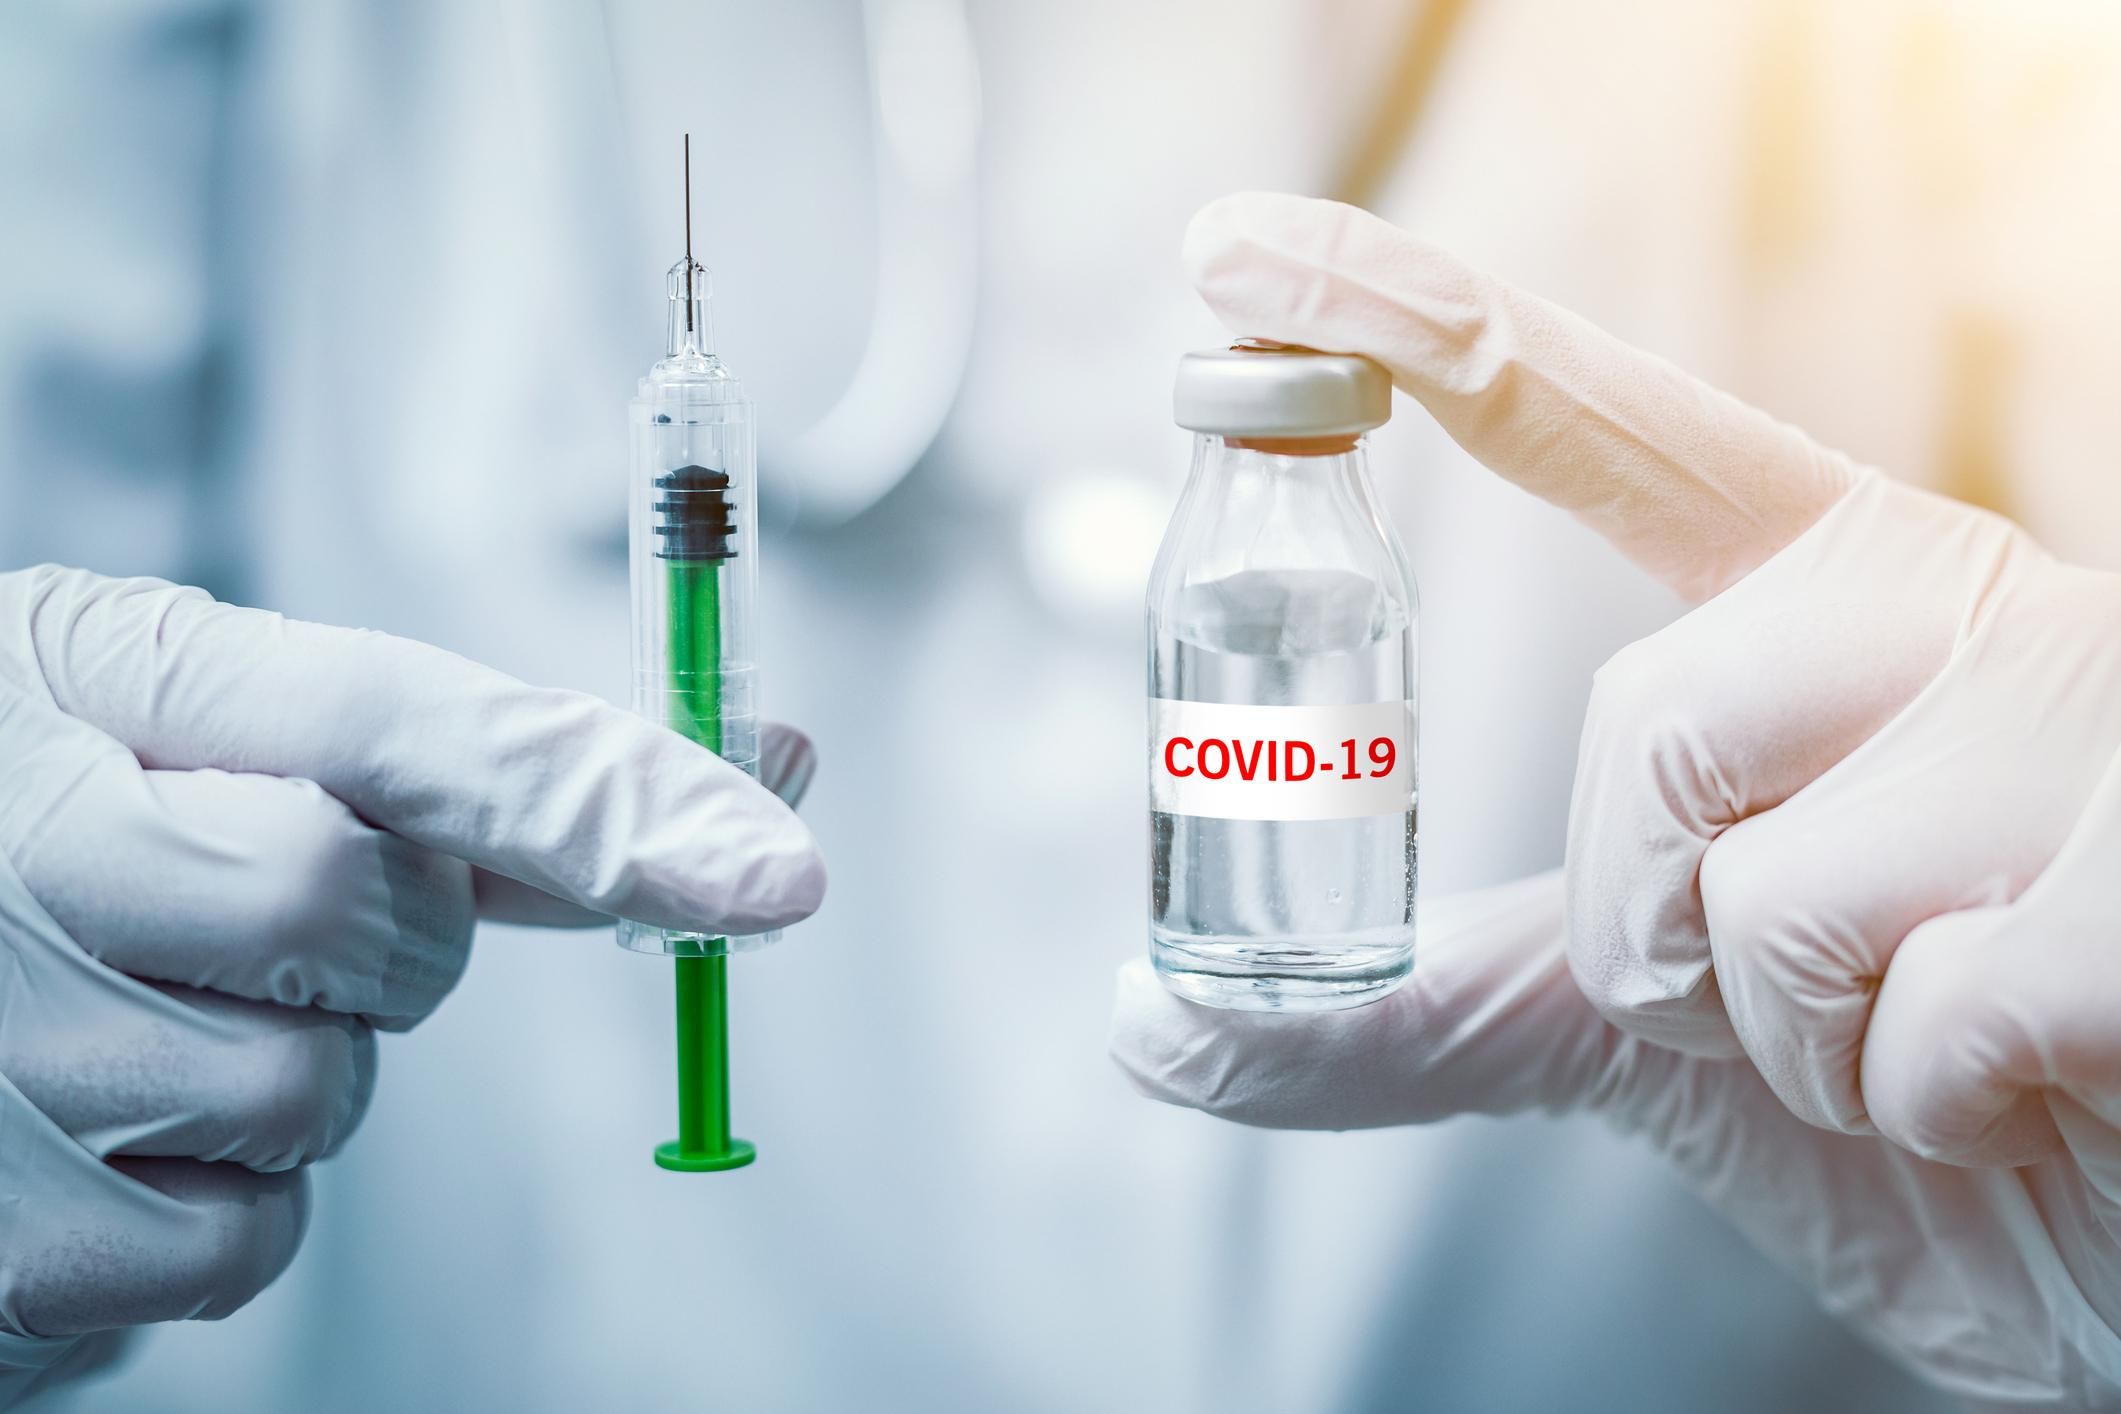 Ціна однієї дози вакцини проти COVID-19 в Україні буде близько 500 гривень